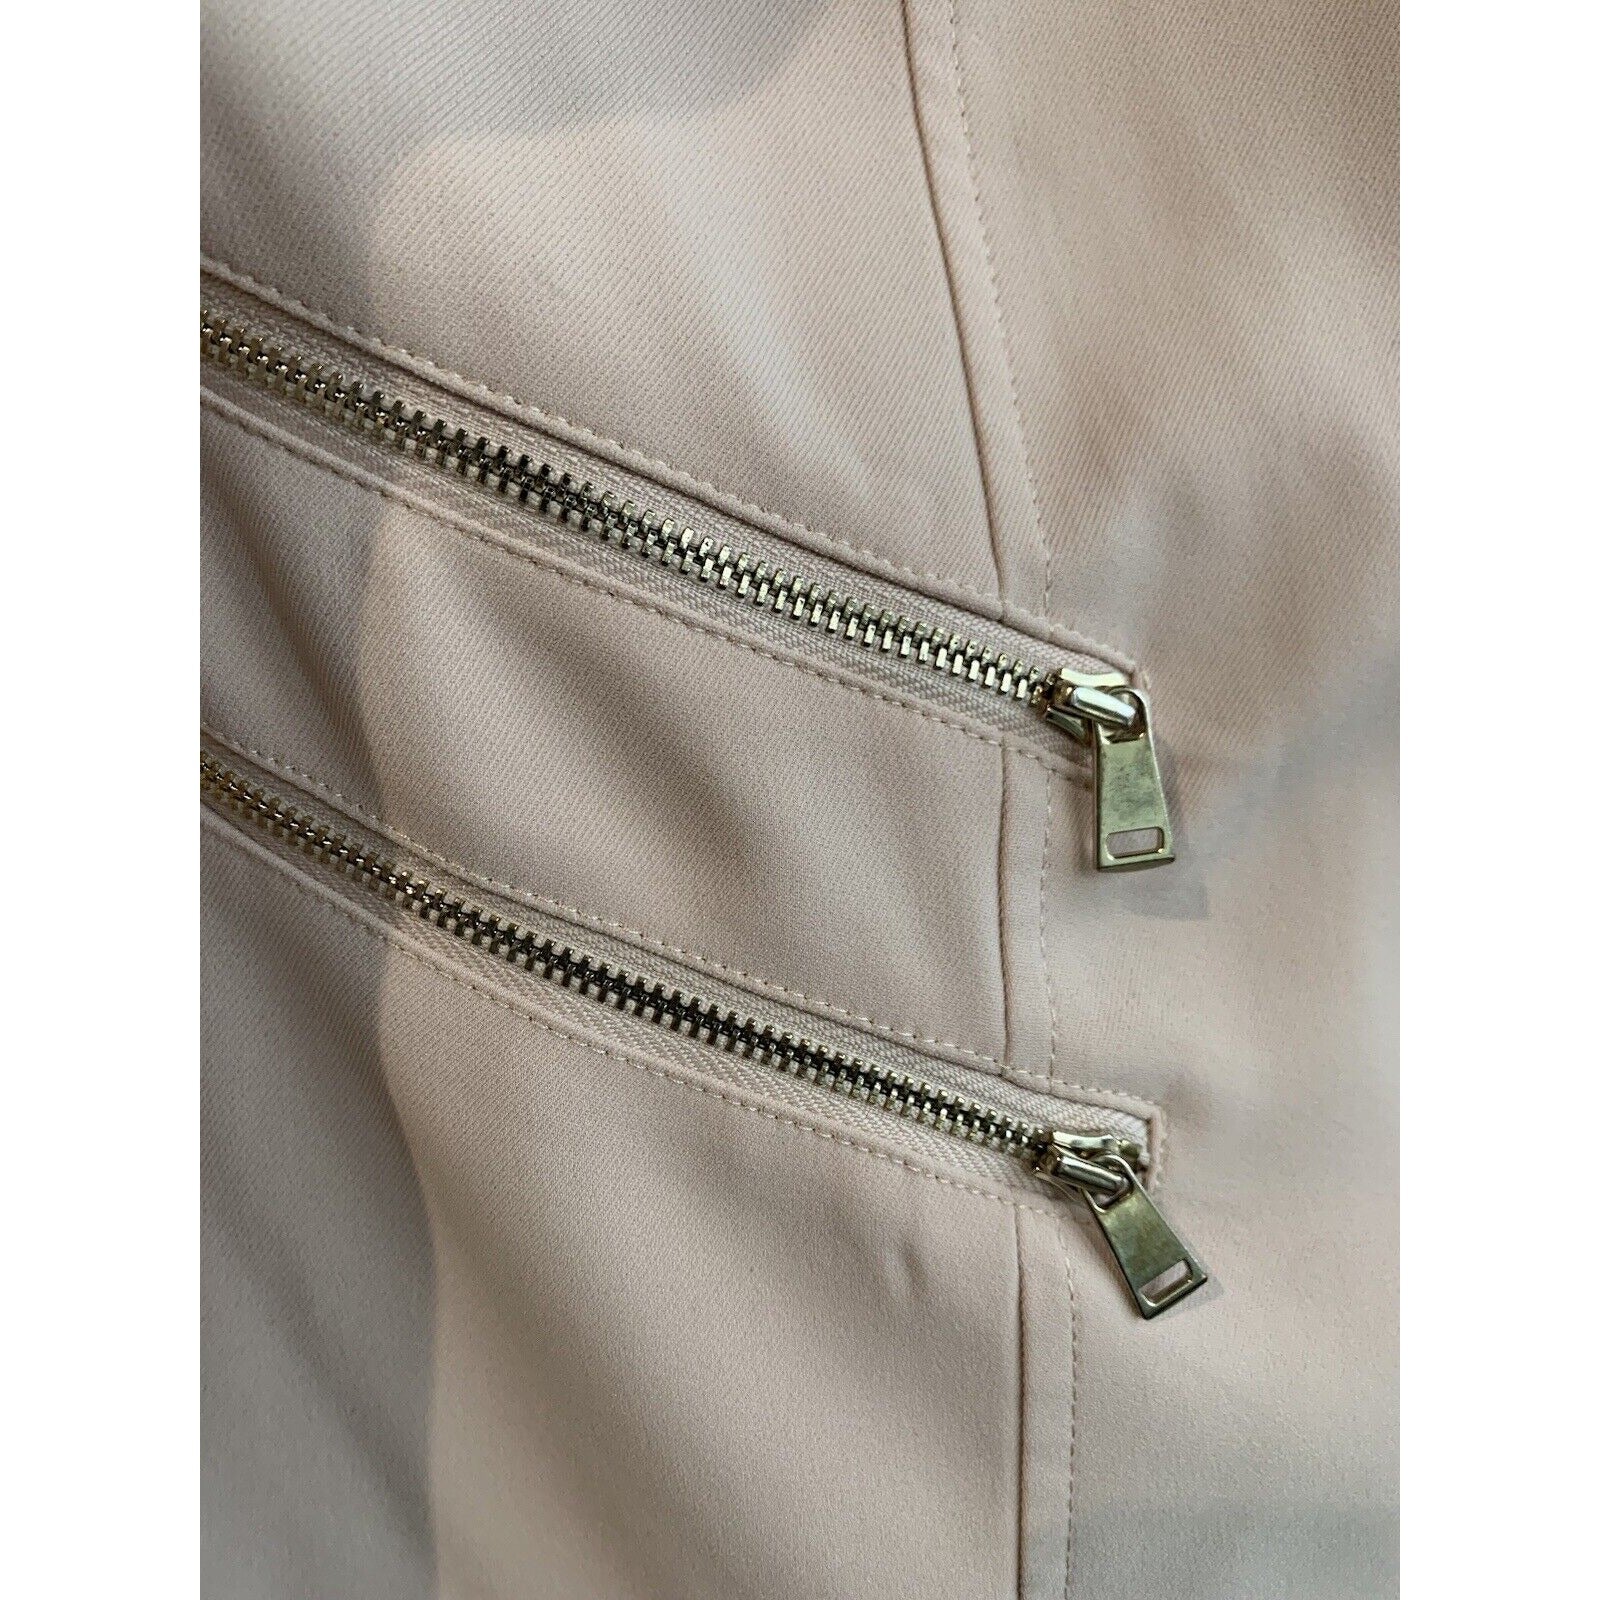 Closeup Of Zippers